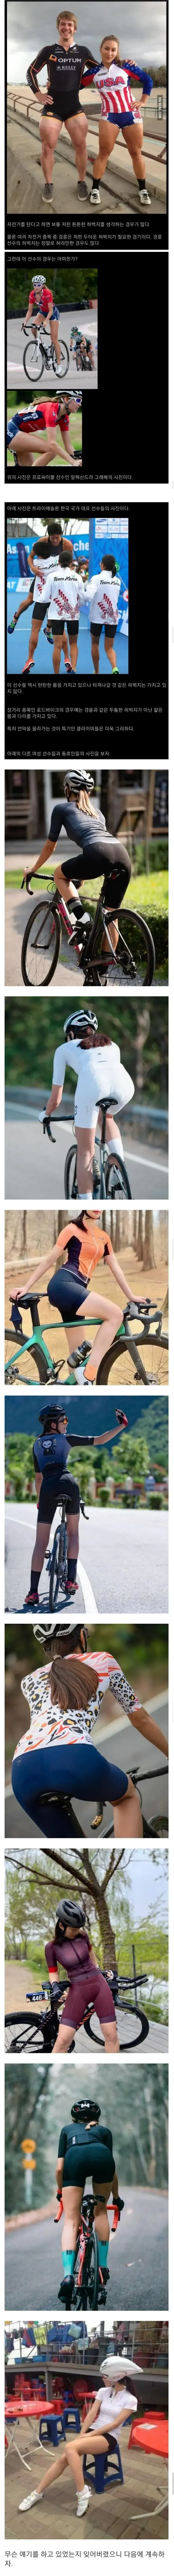 약약약 후후))) 자전거를 타면 정말로 허벅지가 굵어질까